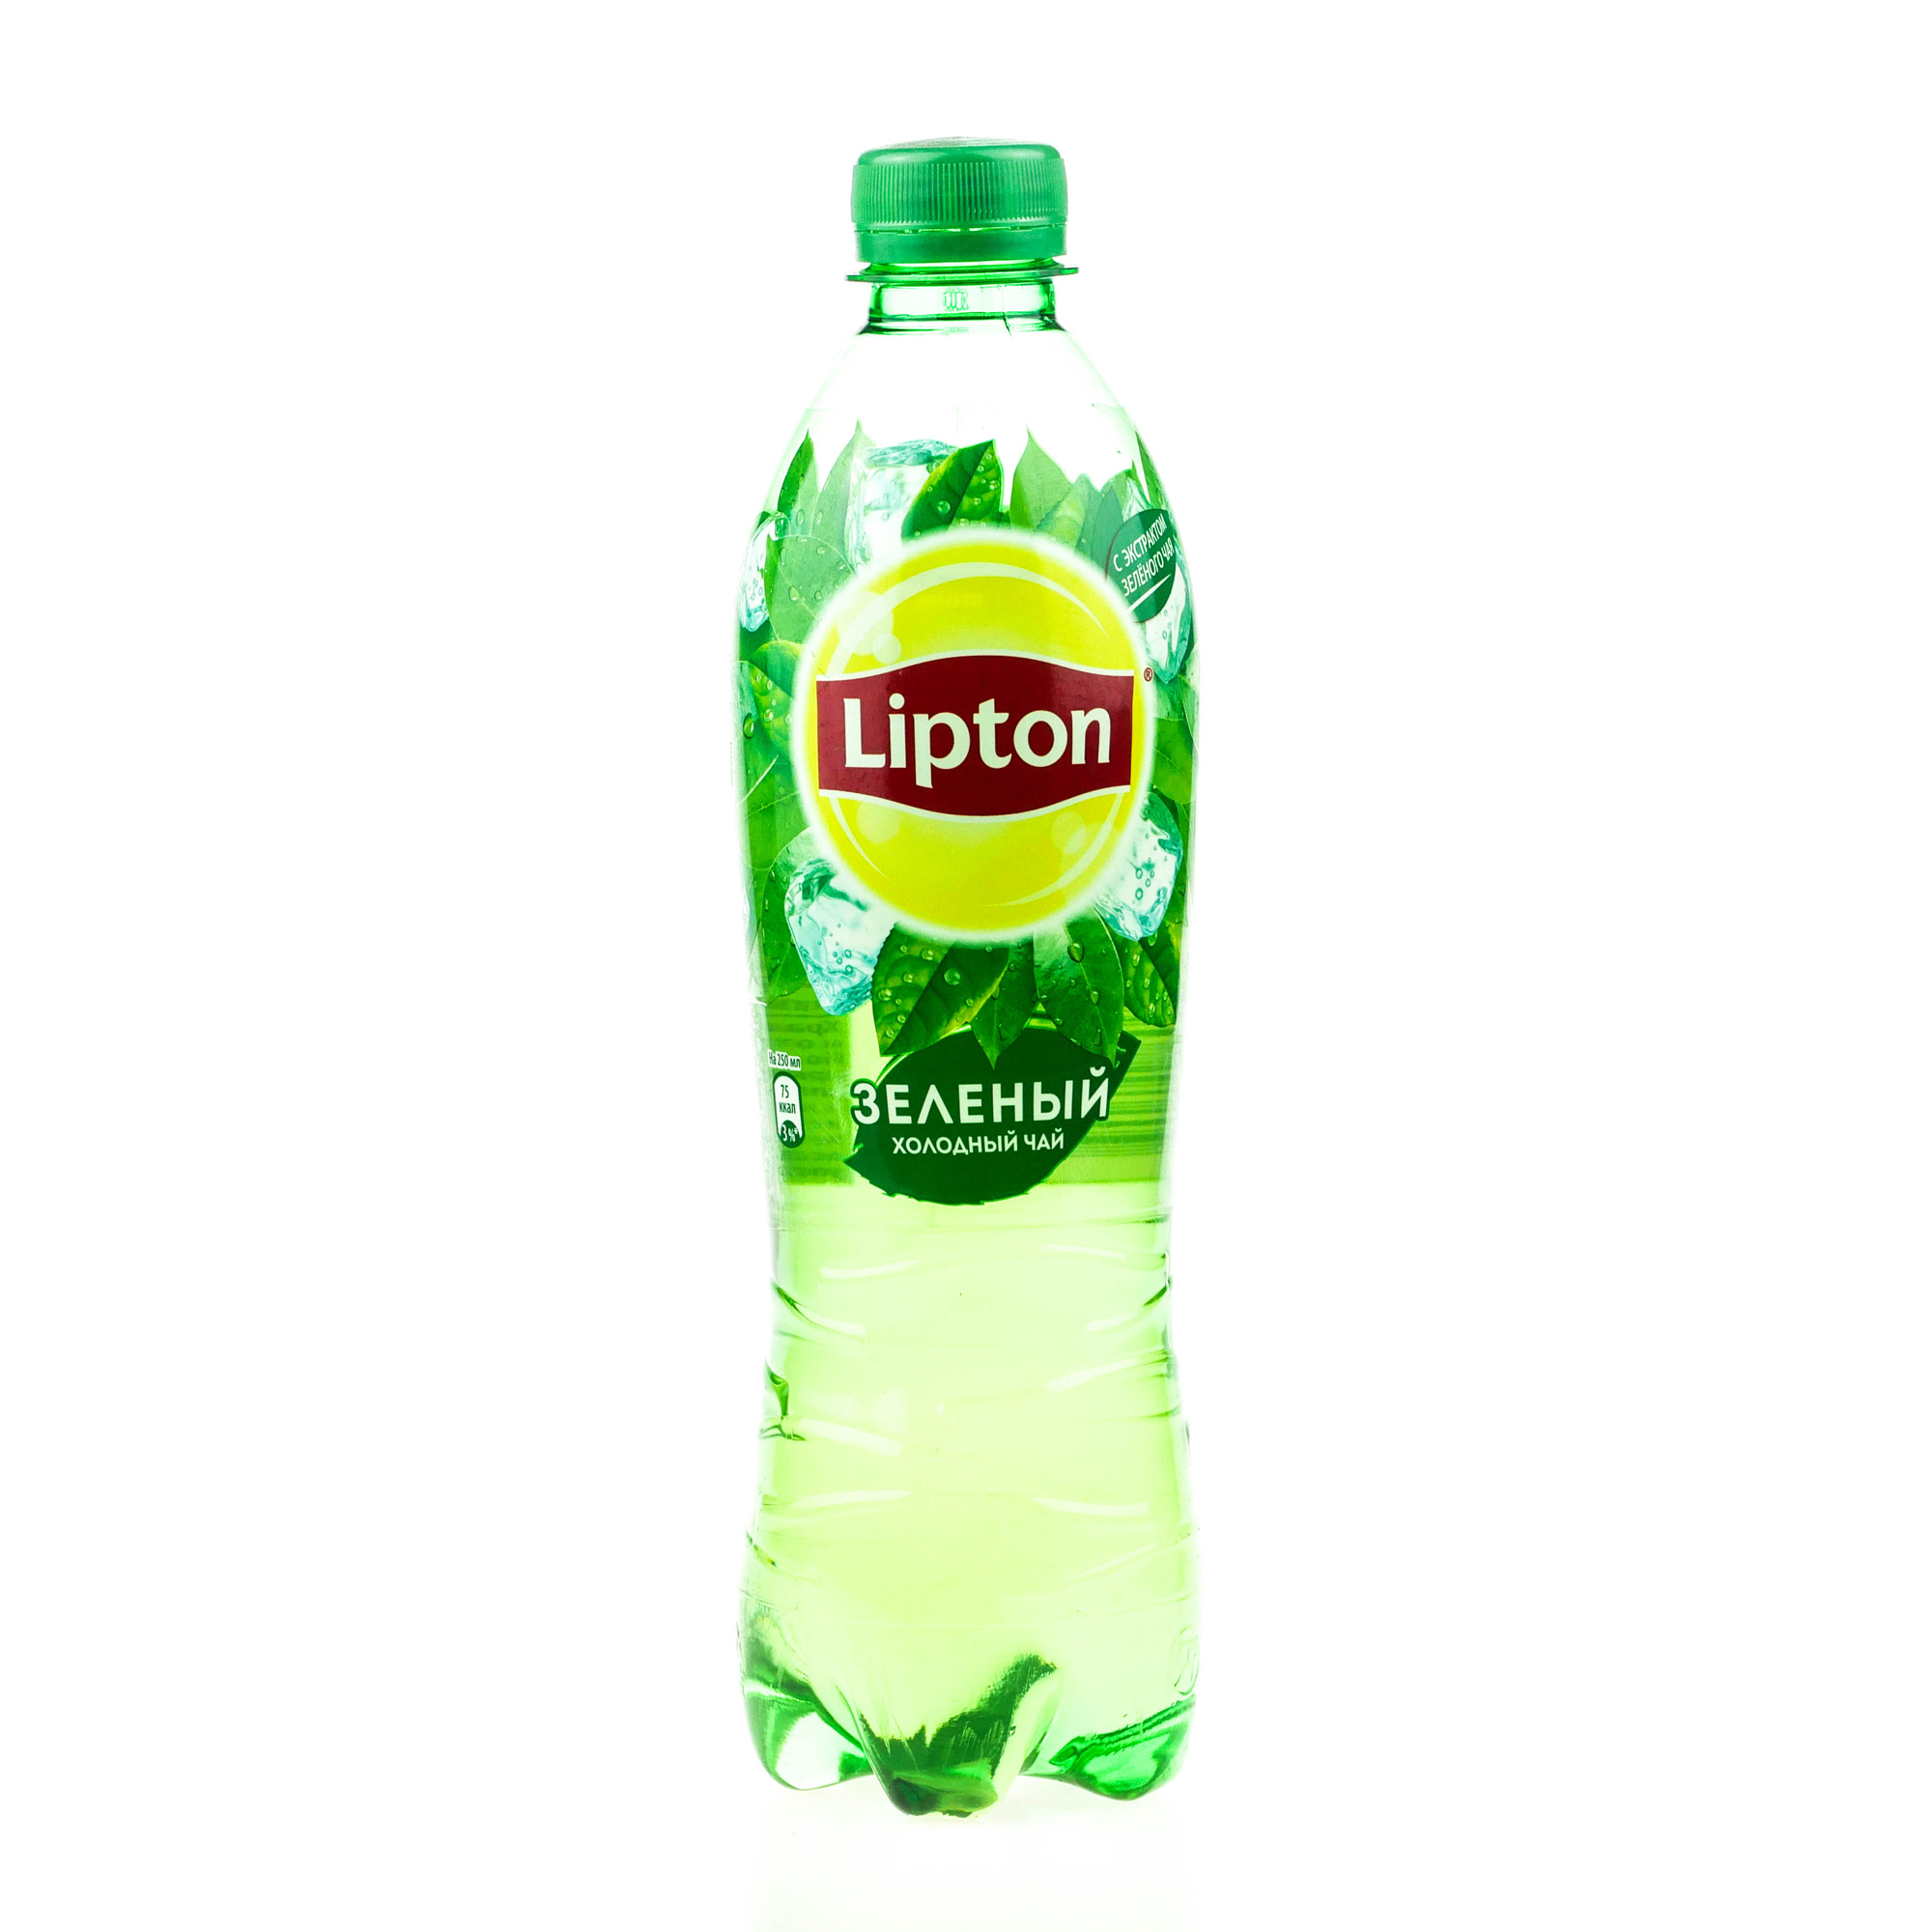 Картинки липтона. Липтон зеленый чай 0.5. Липтон зелёный холодный чай. Липтон зеленый 0 5 на белом фоне. Чай Липтон 0.5.